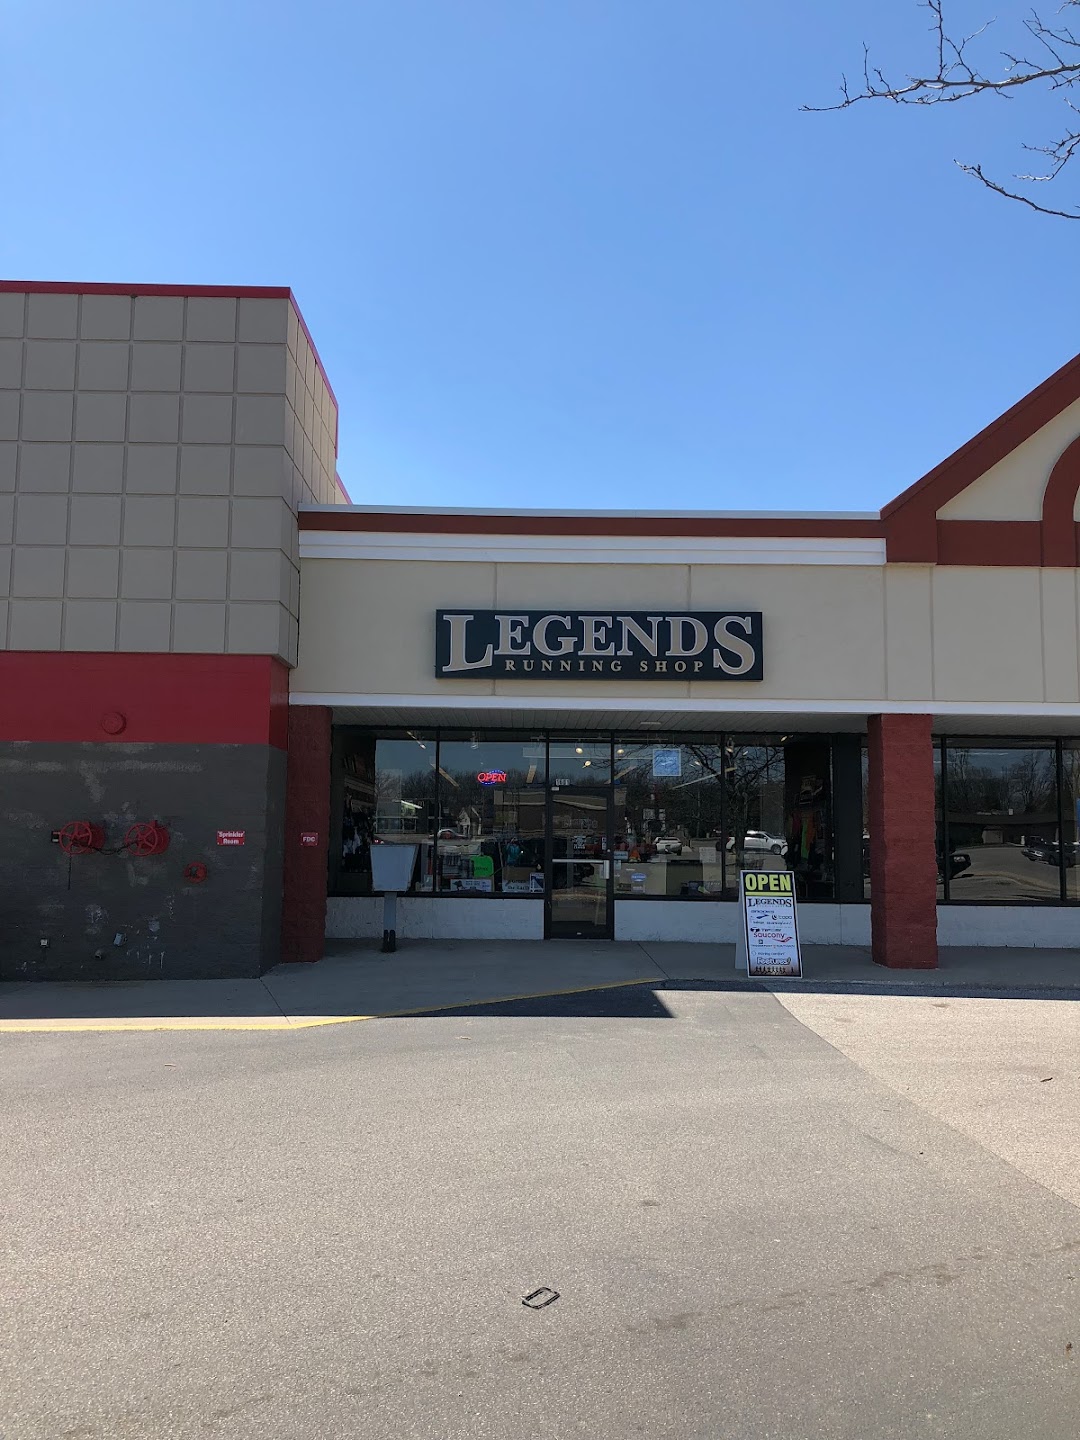 Legends Running Shop